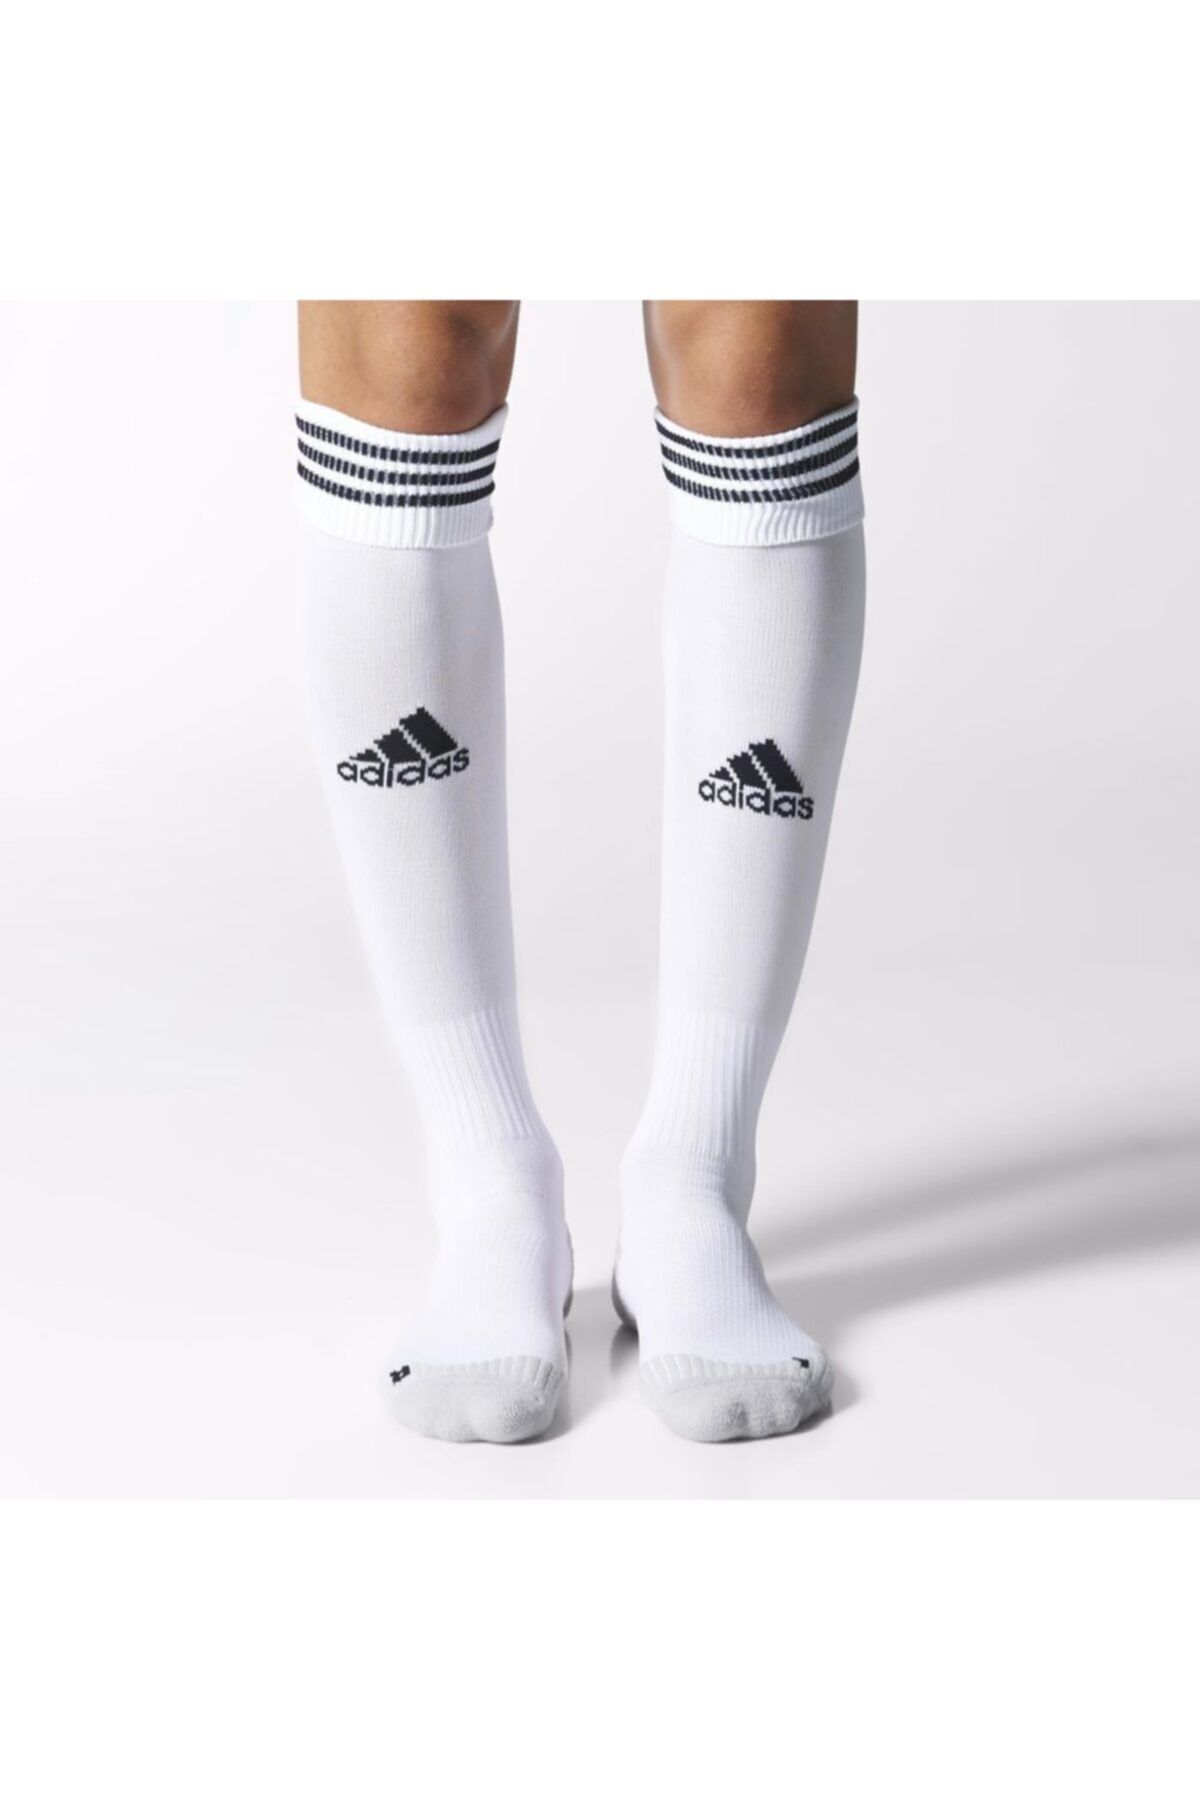 adidas Erkek Çorap - Adısock 12 - X10313